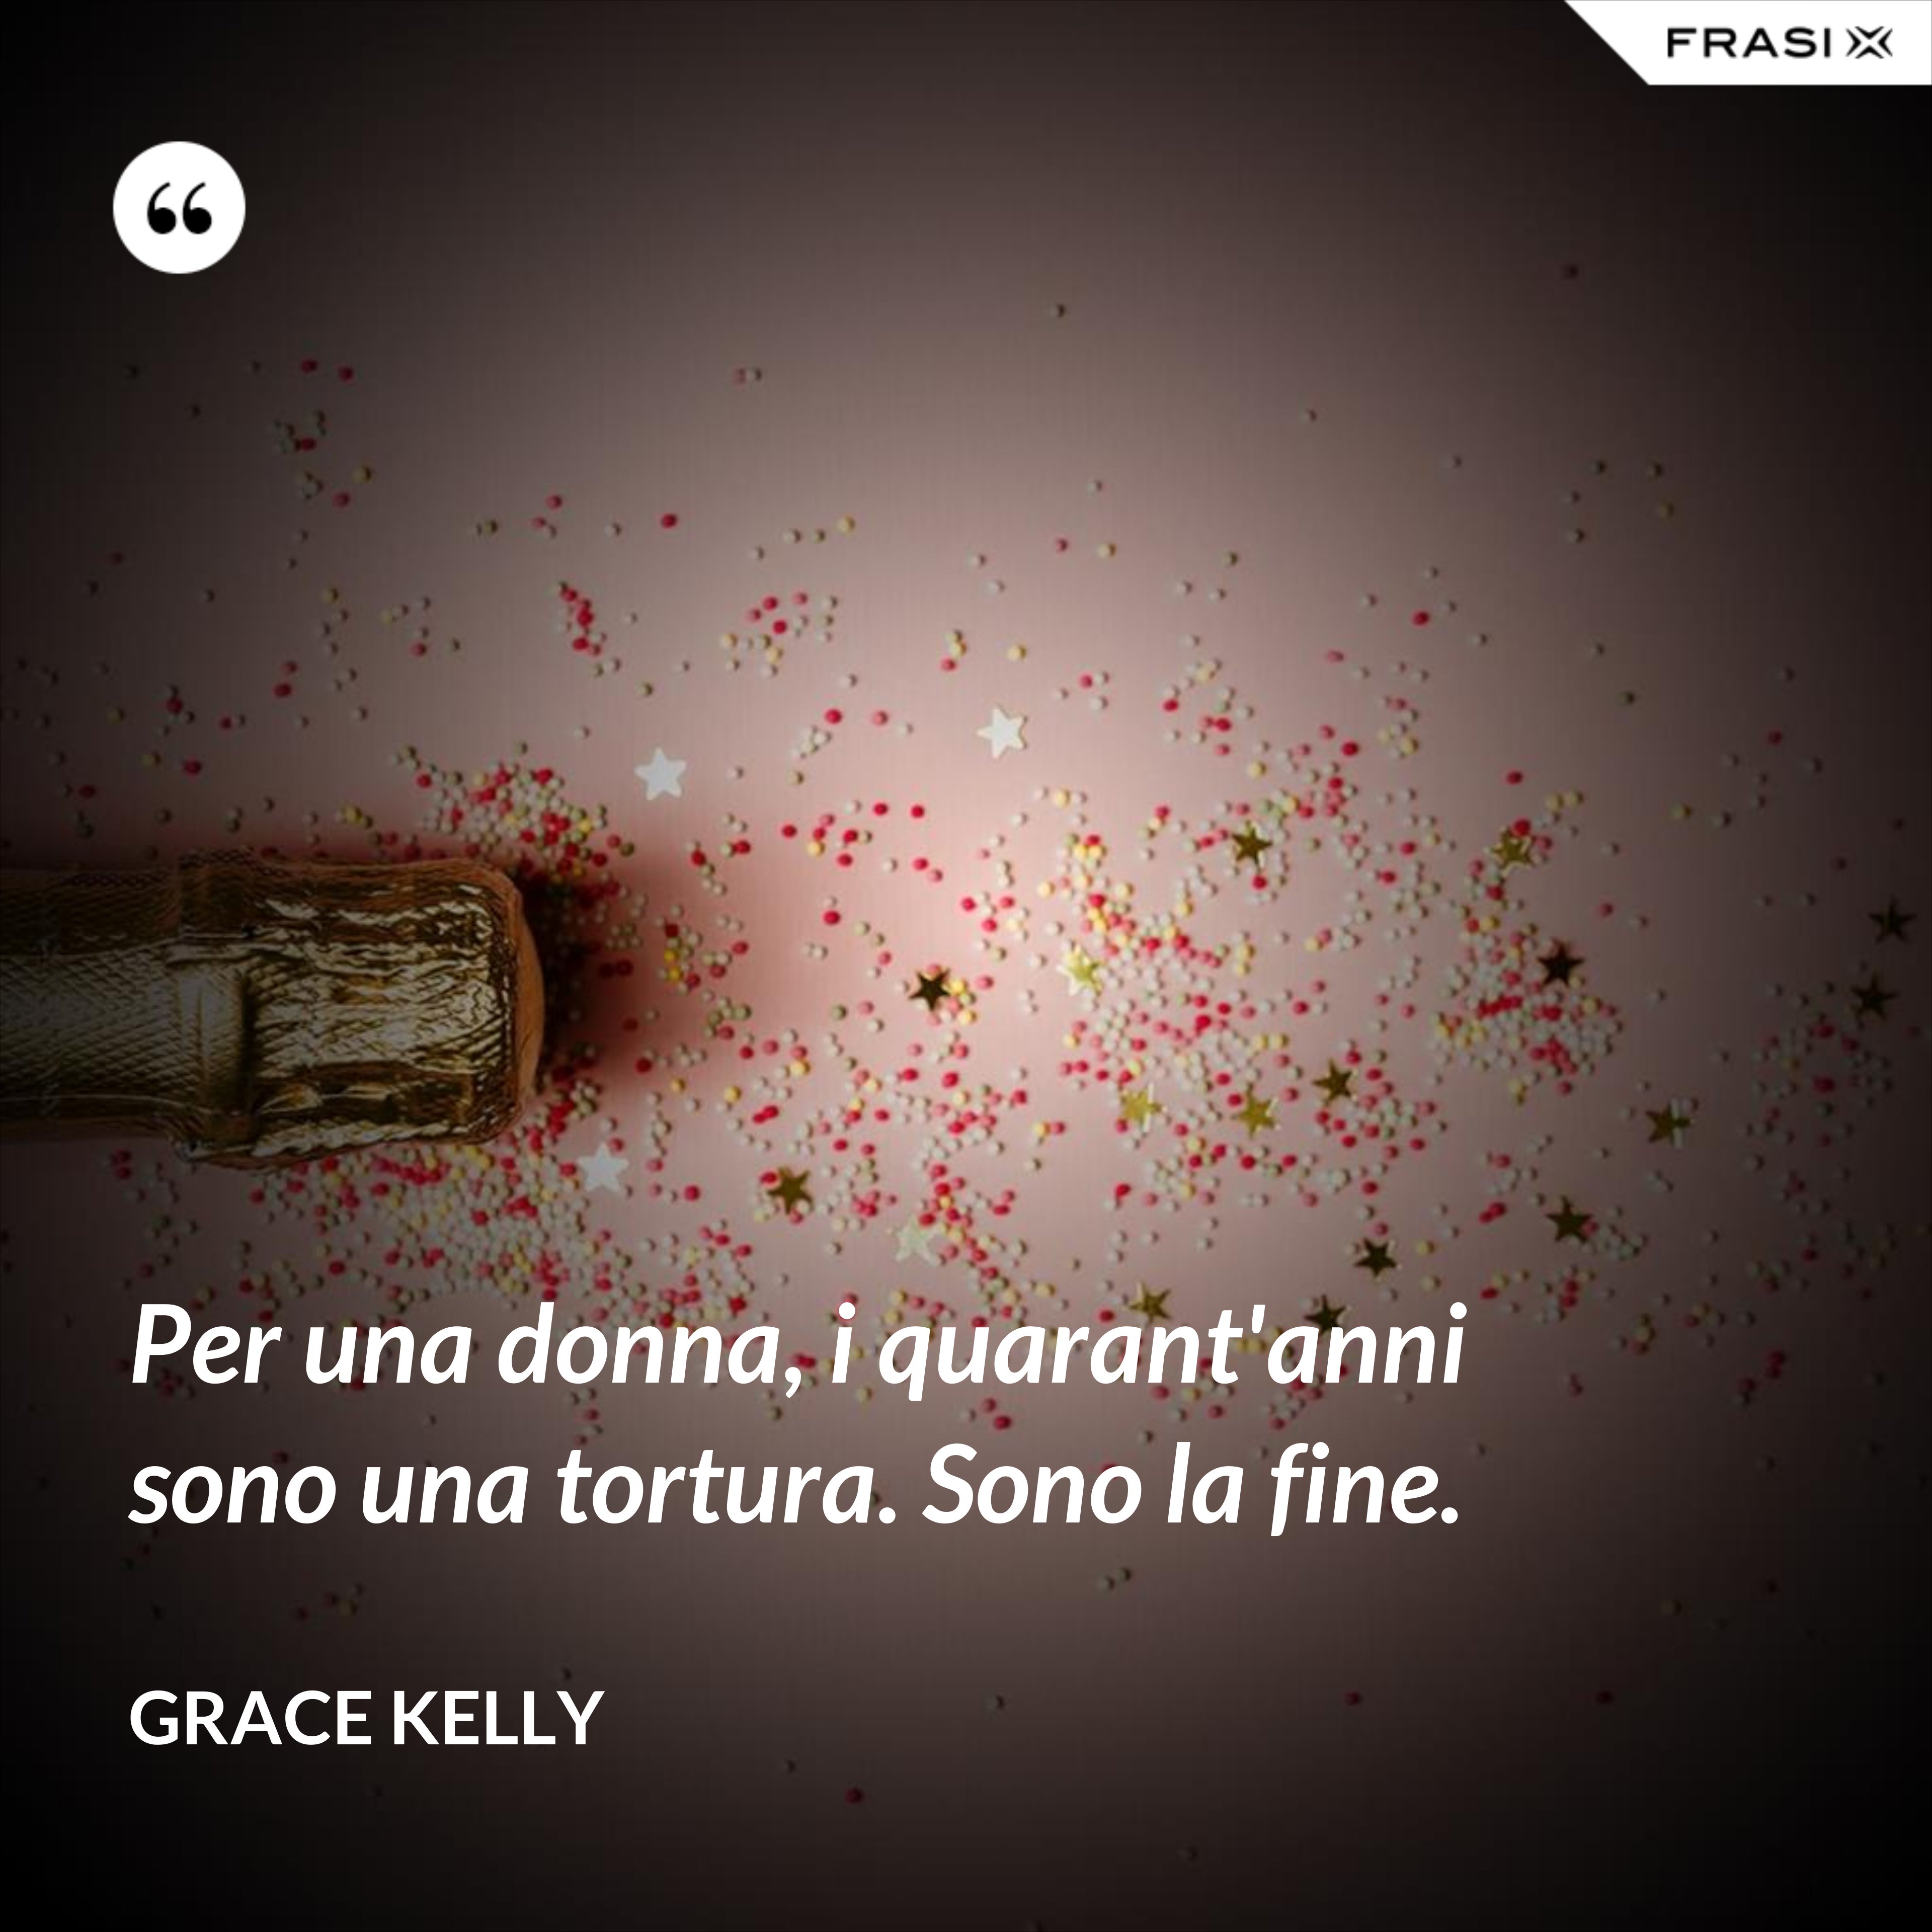 Per una donna, i quarant'anni sono una tortura. Sono la fine. - Grace Kelly